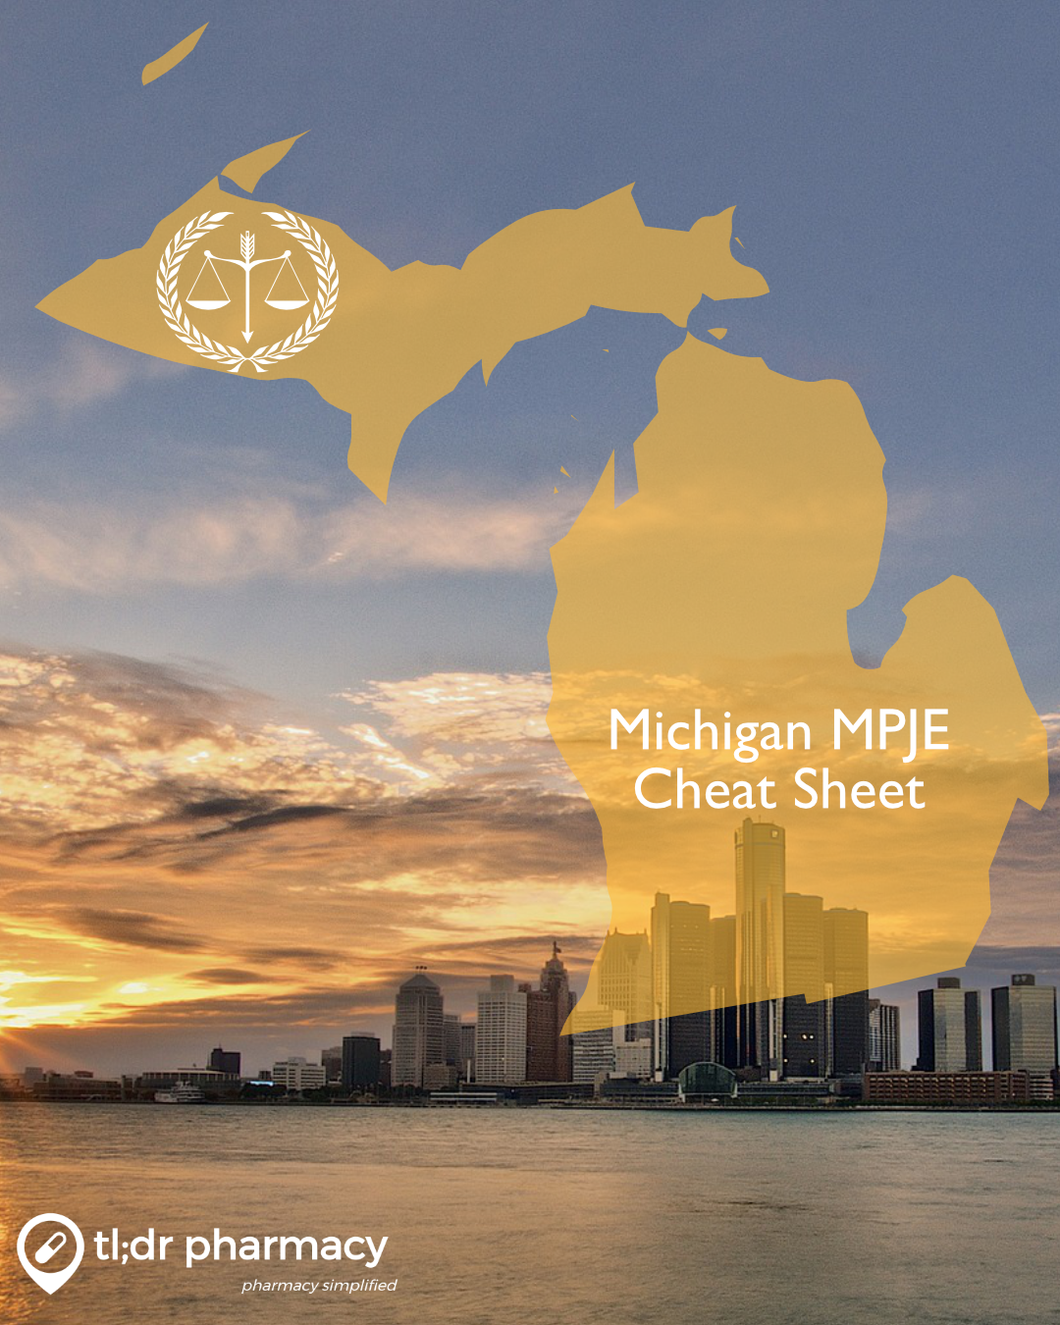 MPJE Cheat Sheet: Michigan